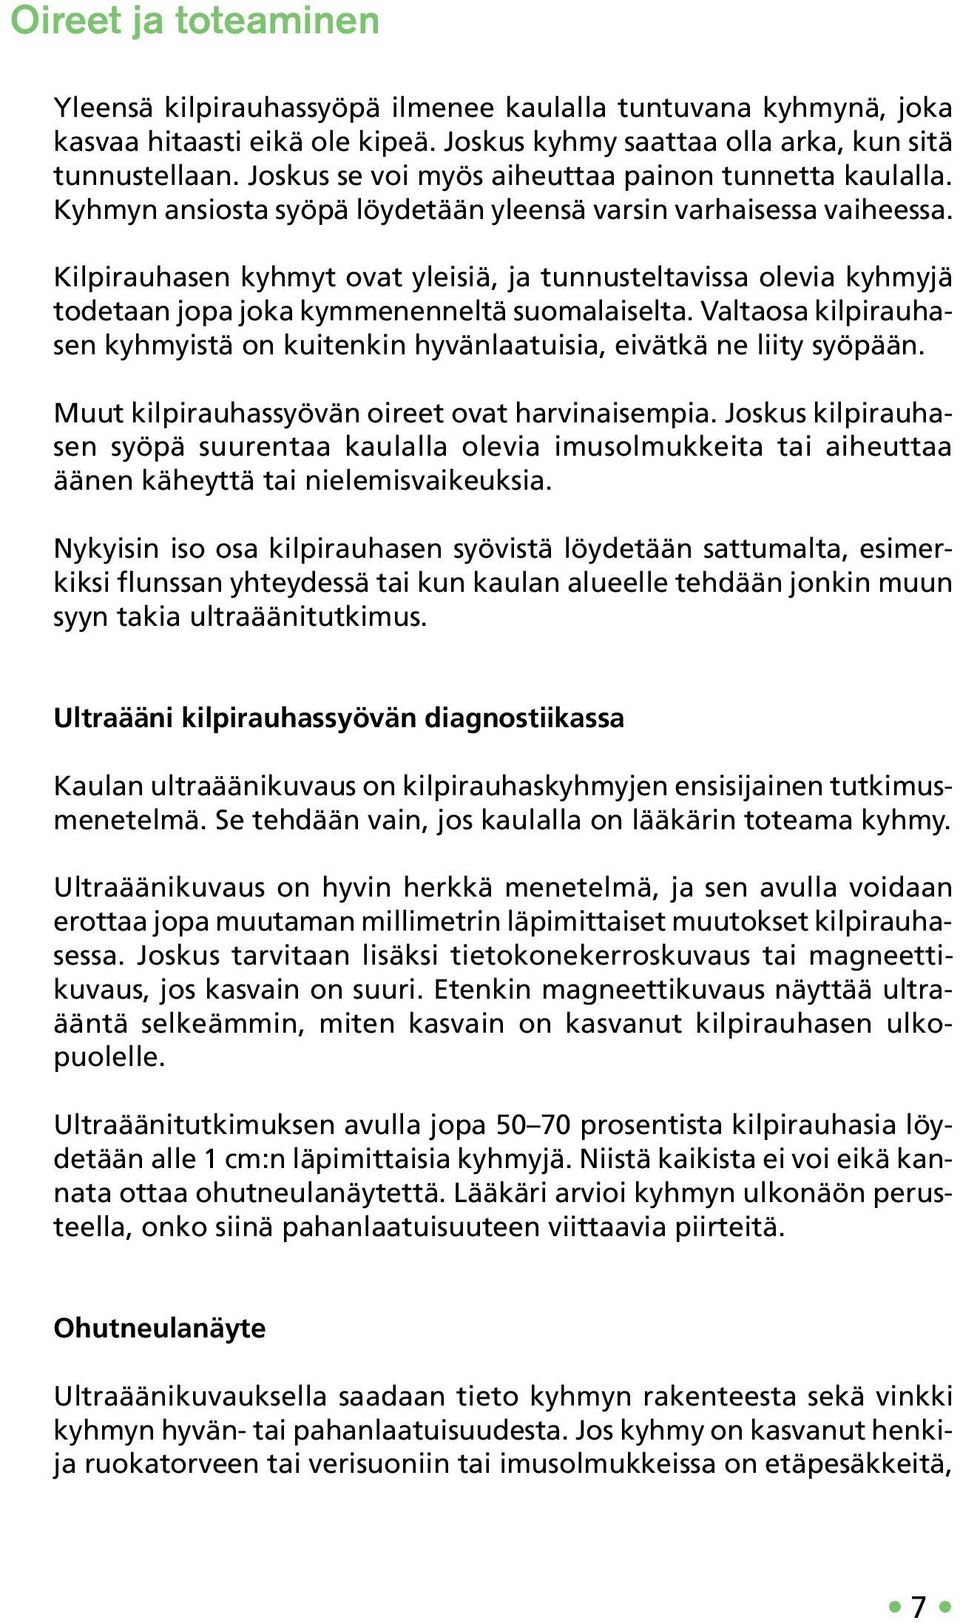 Kilpirauhasen kyhmyt ovat yleisiä, ja tunnusteltavissa olevia kyhmyjä todetaan jopa joka kymmenenneltä suomalaiselta.